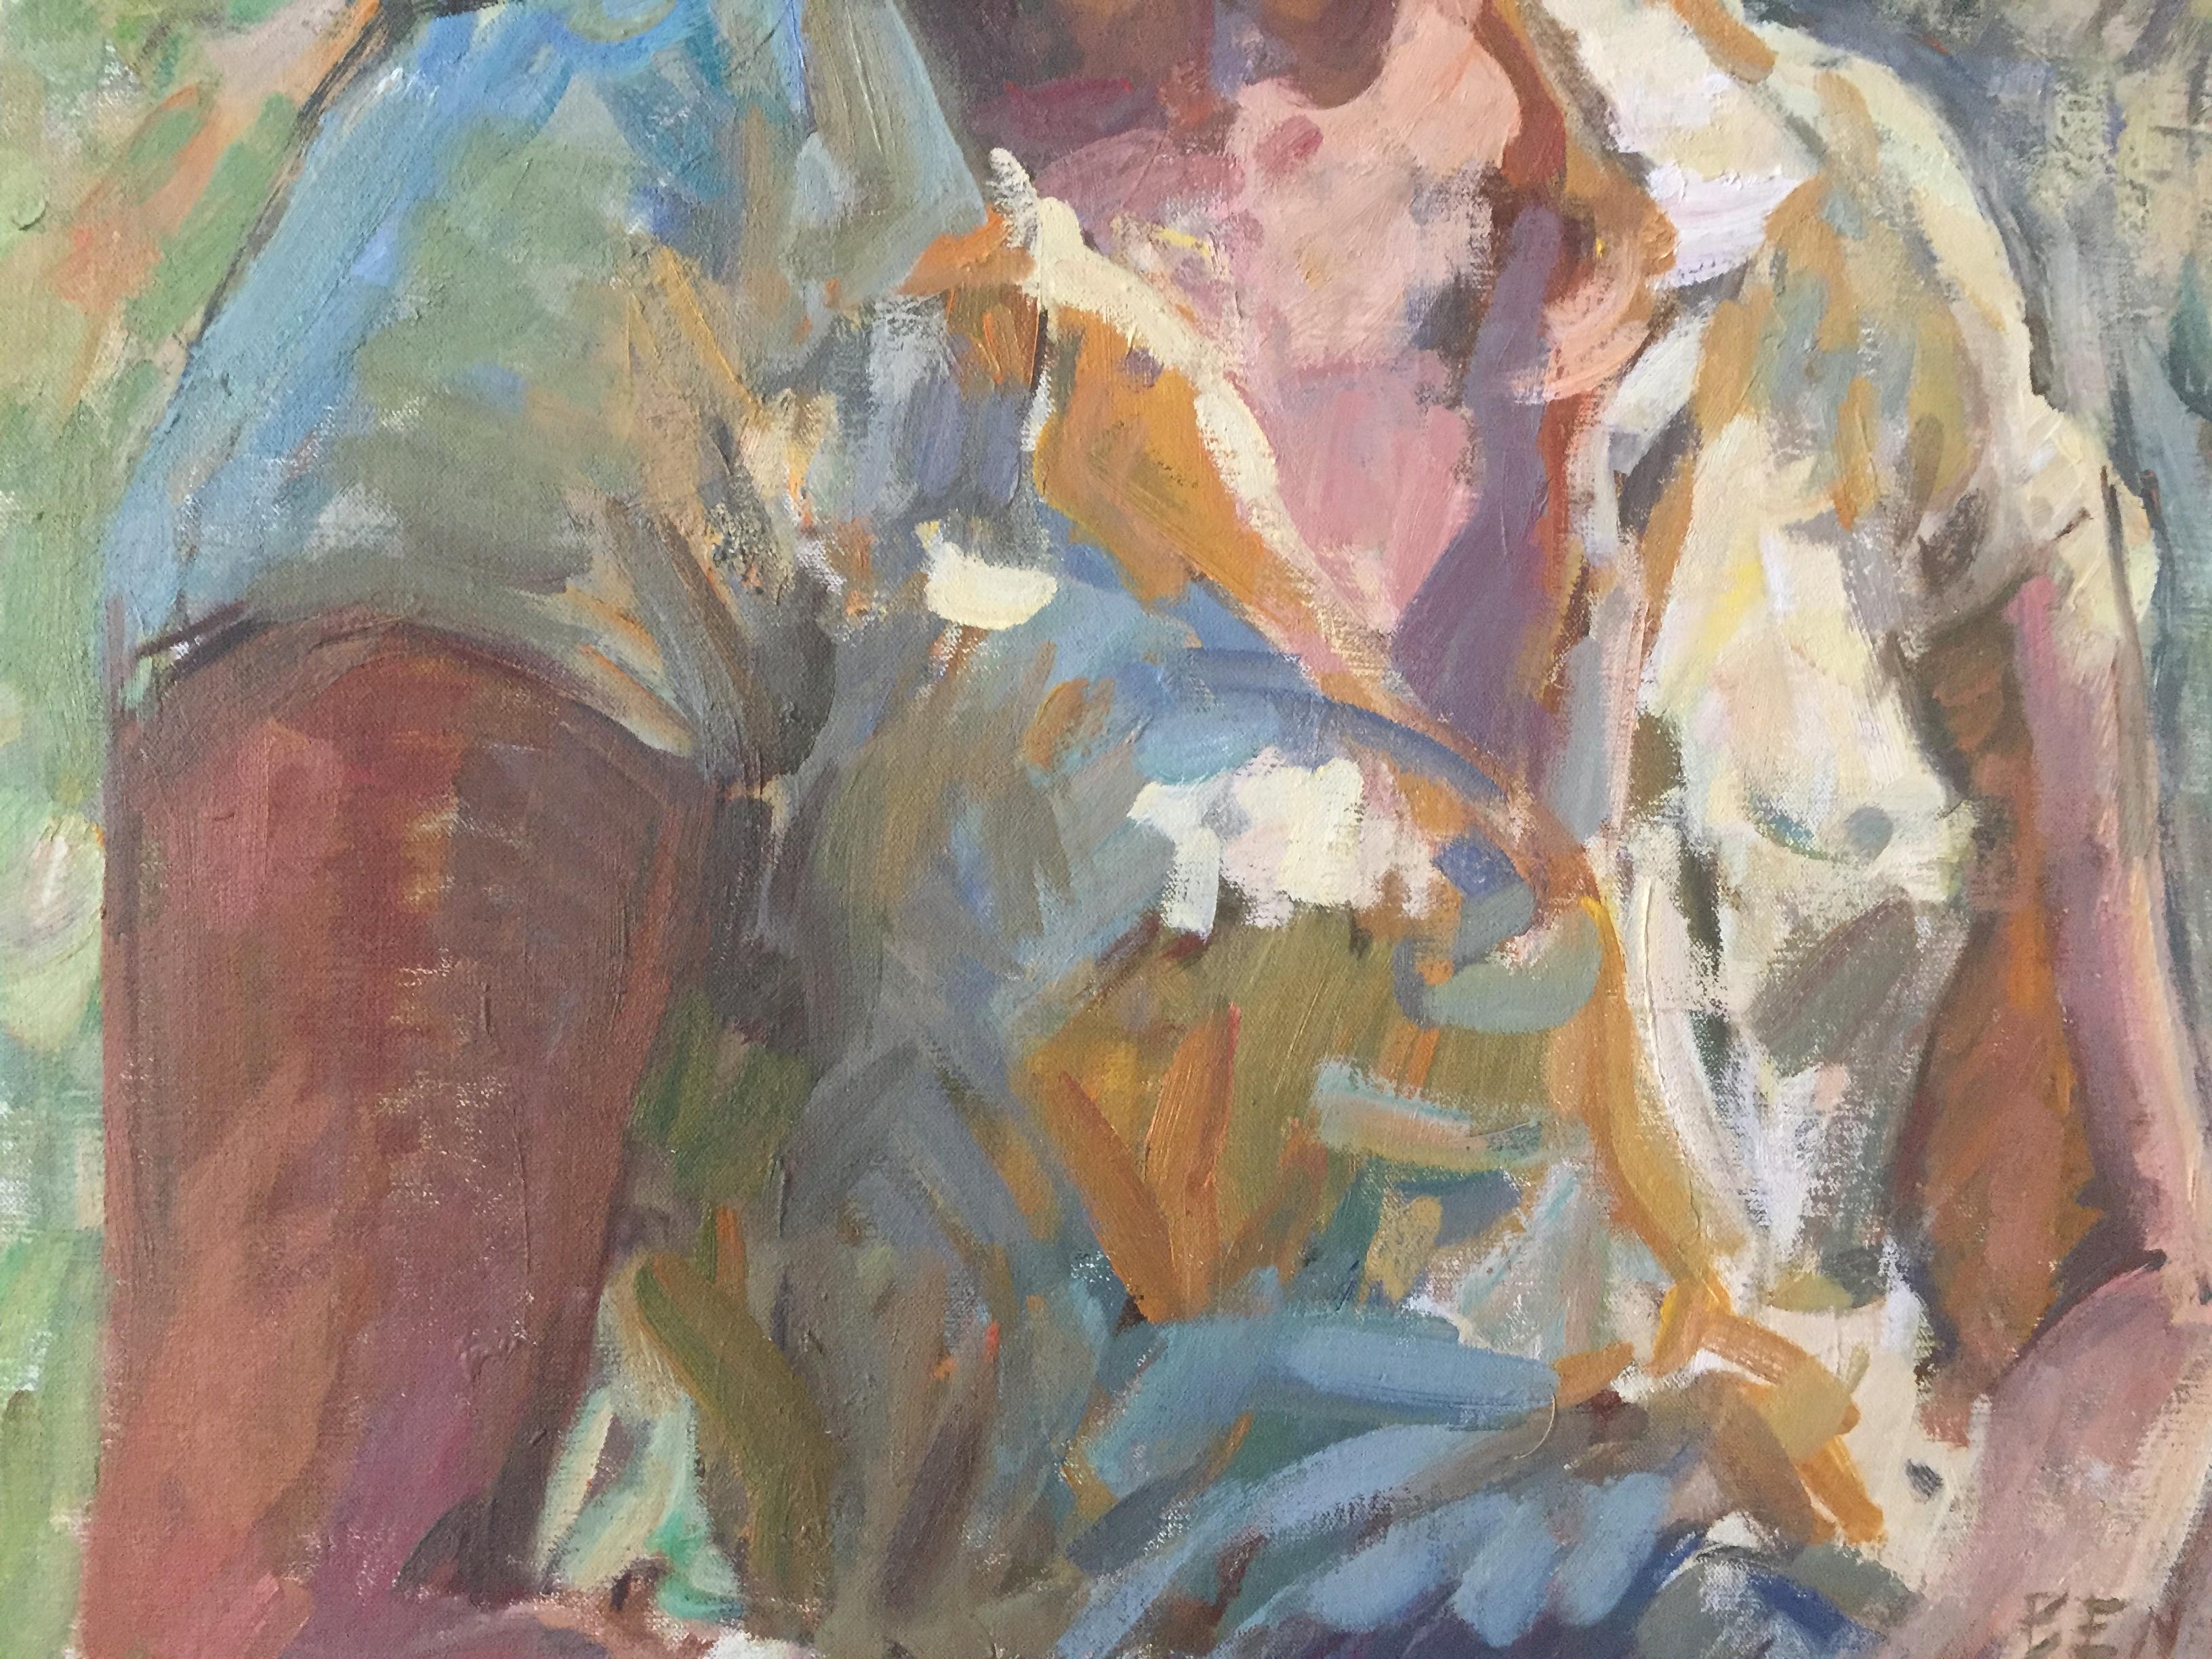 Une huile sur toile représentant une femme en plein air, un arbre courbé dans le lointain encadre son portrait. Elle porte une chemise jaune à manches courtes et un foulard assorti dans les cheveux. 

Dimensions encadrées : 41.43 x 33.56 pouces

Ben